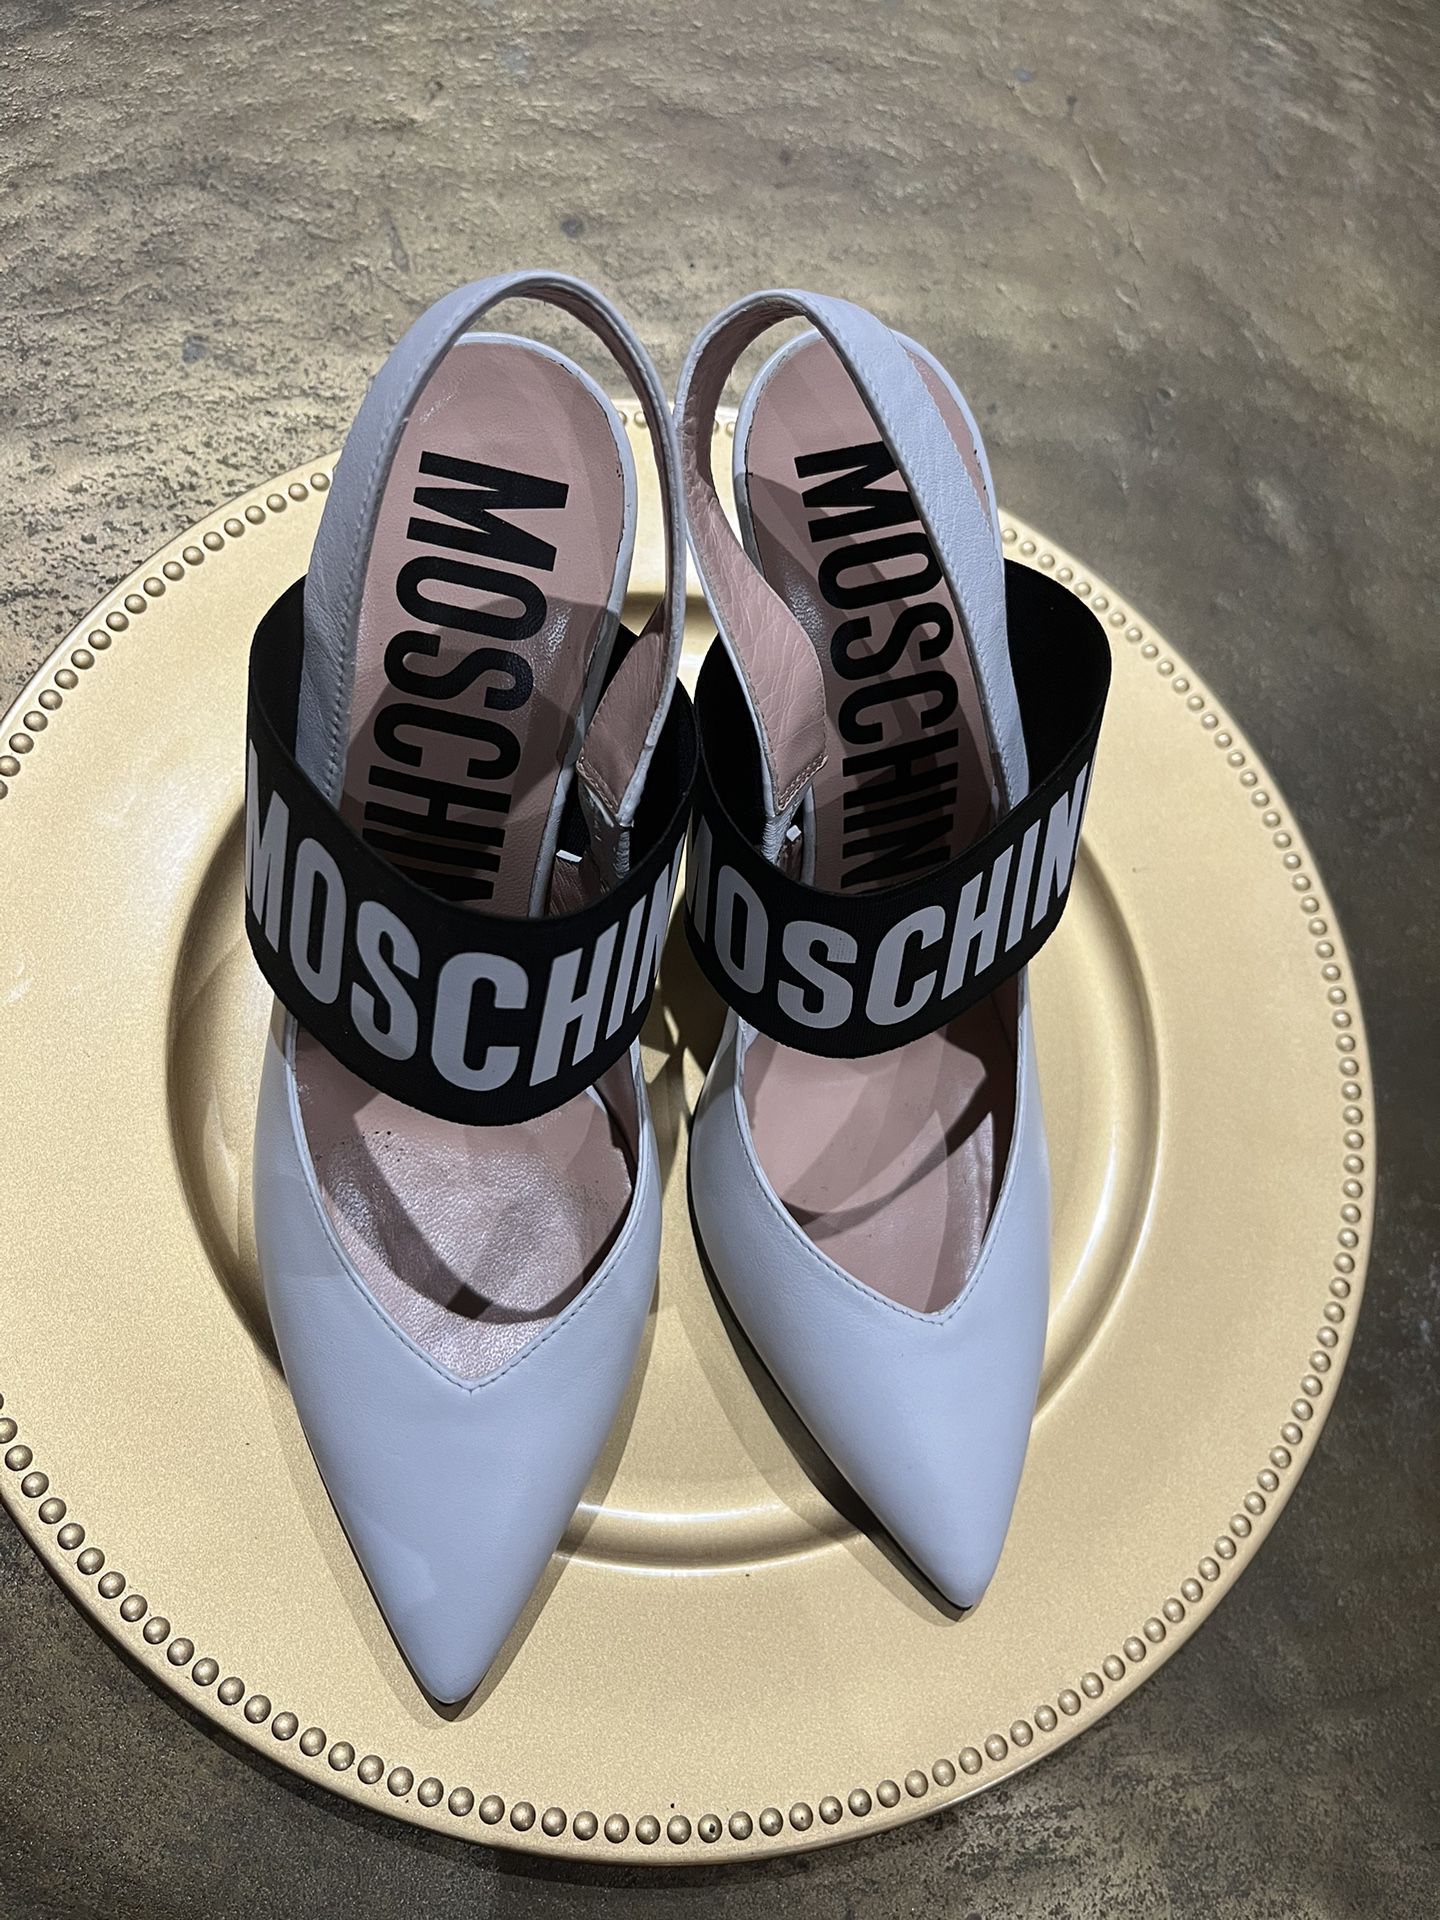 White Moschino Heels Size 38 Women’s